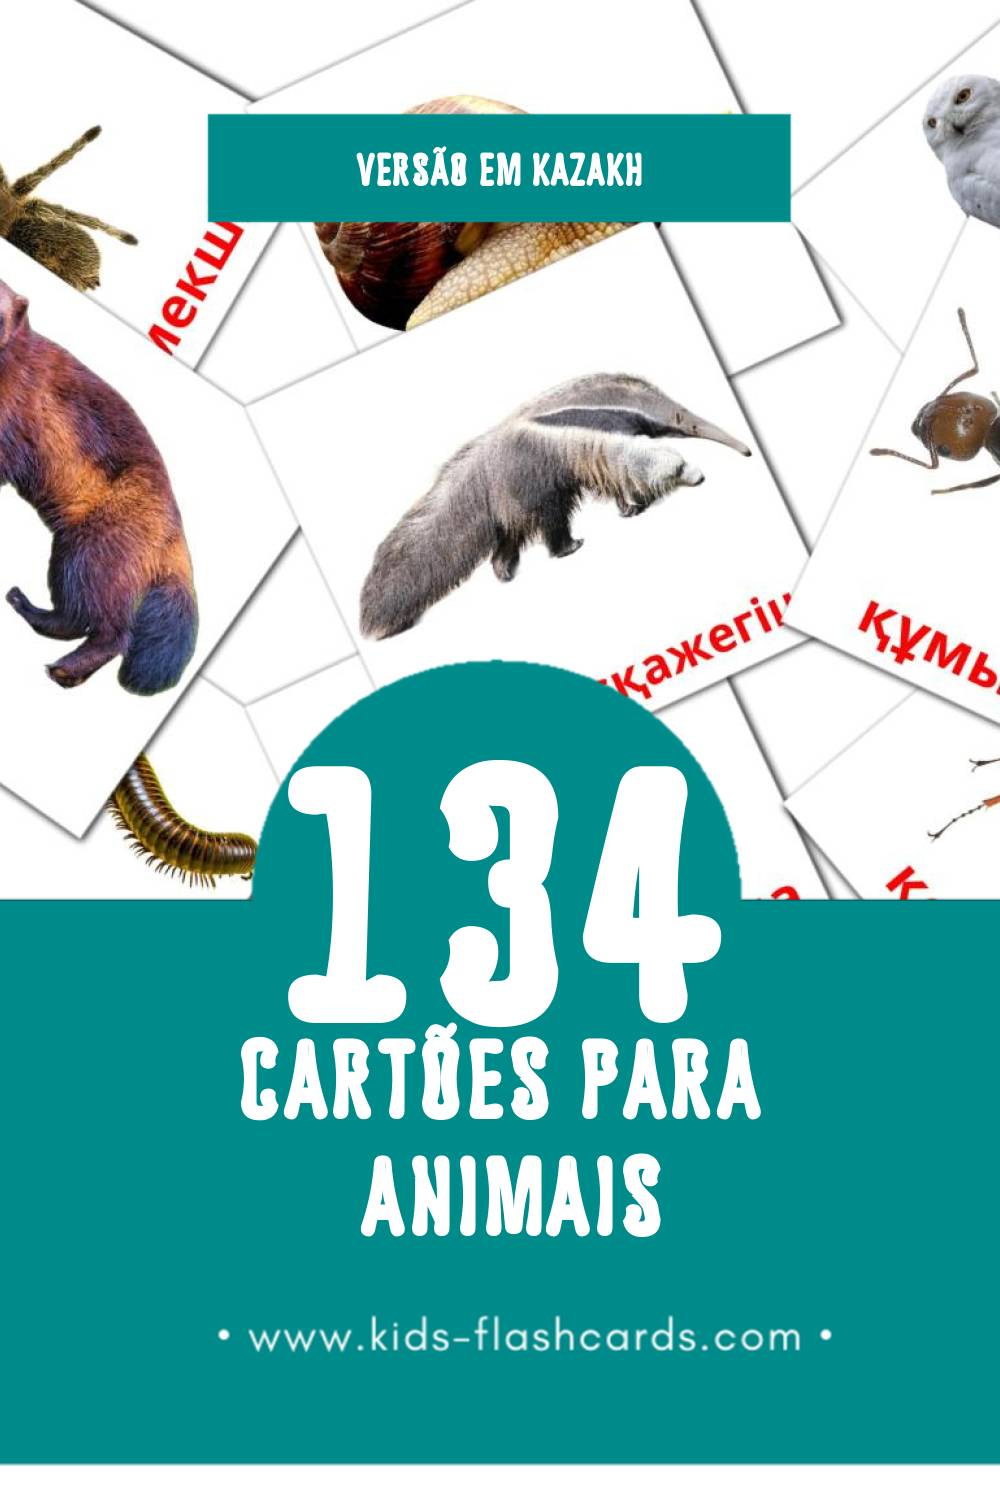 Flashcards de Жануарлар Visuais para Toddlers (134 cartões em Kazakh)